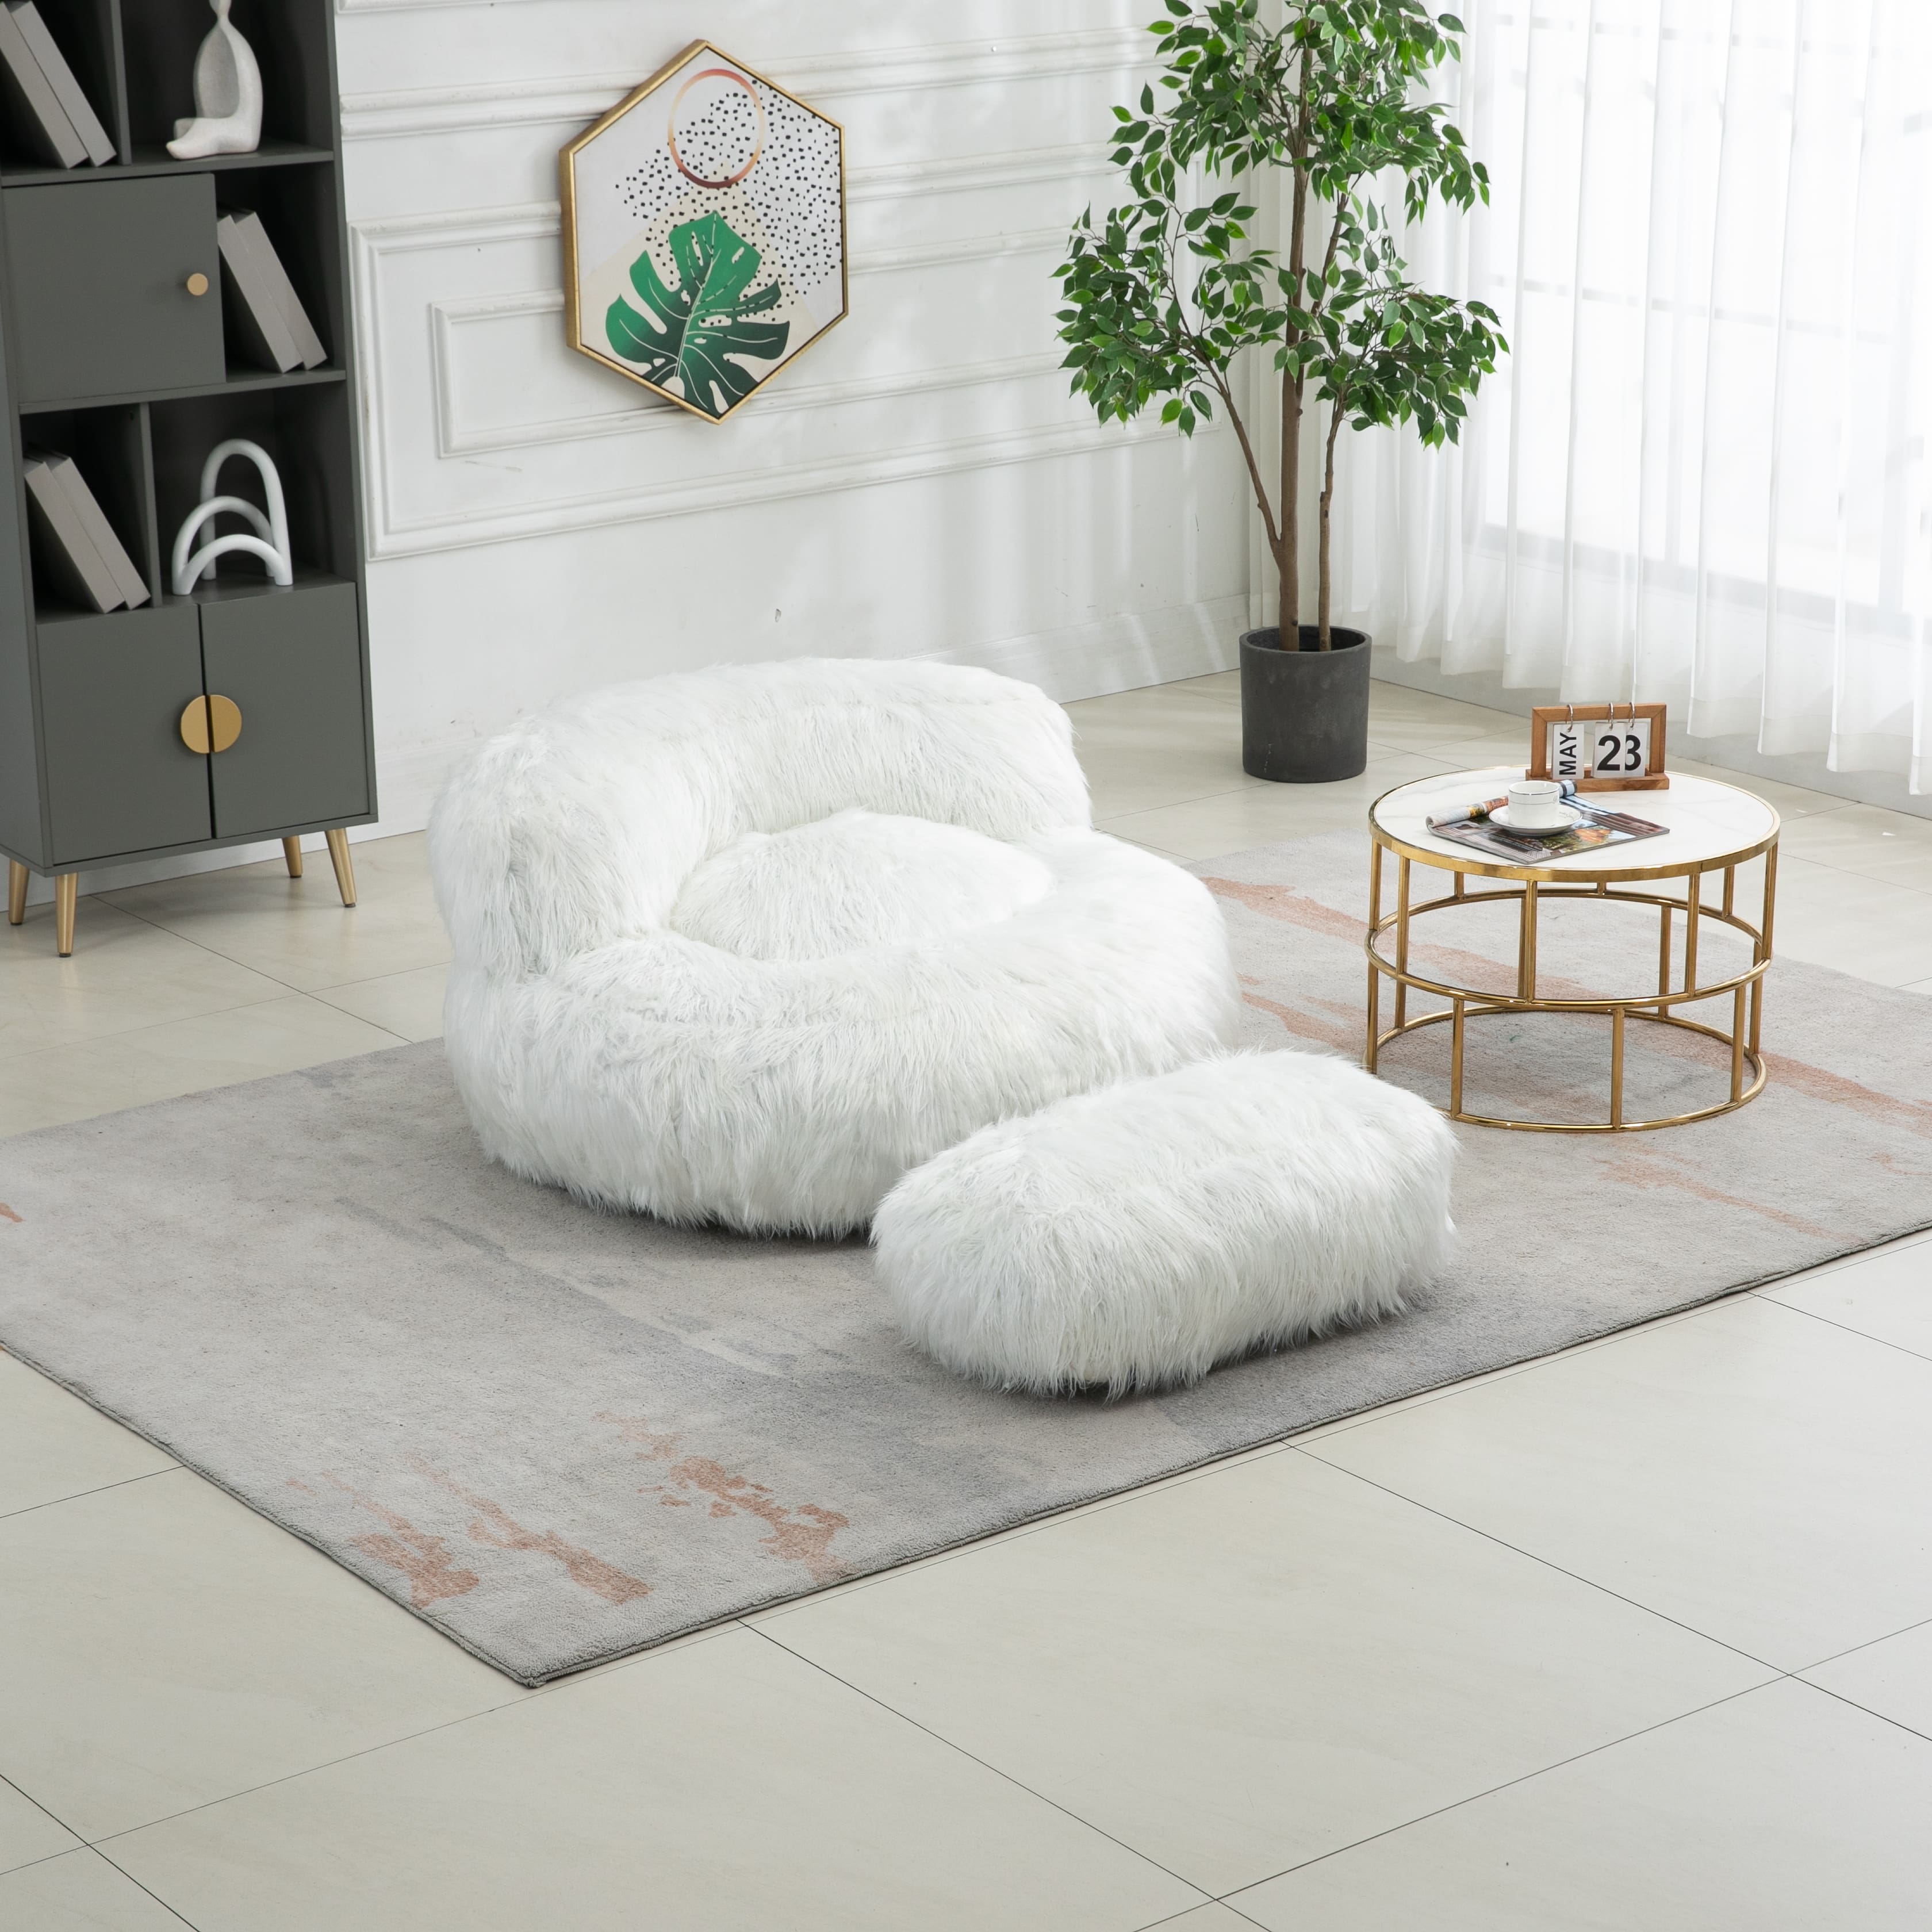 Bean Bag Chair Lazy Sofa - Bed Bath & Beyond - 39195649